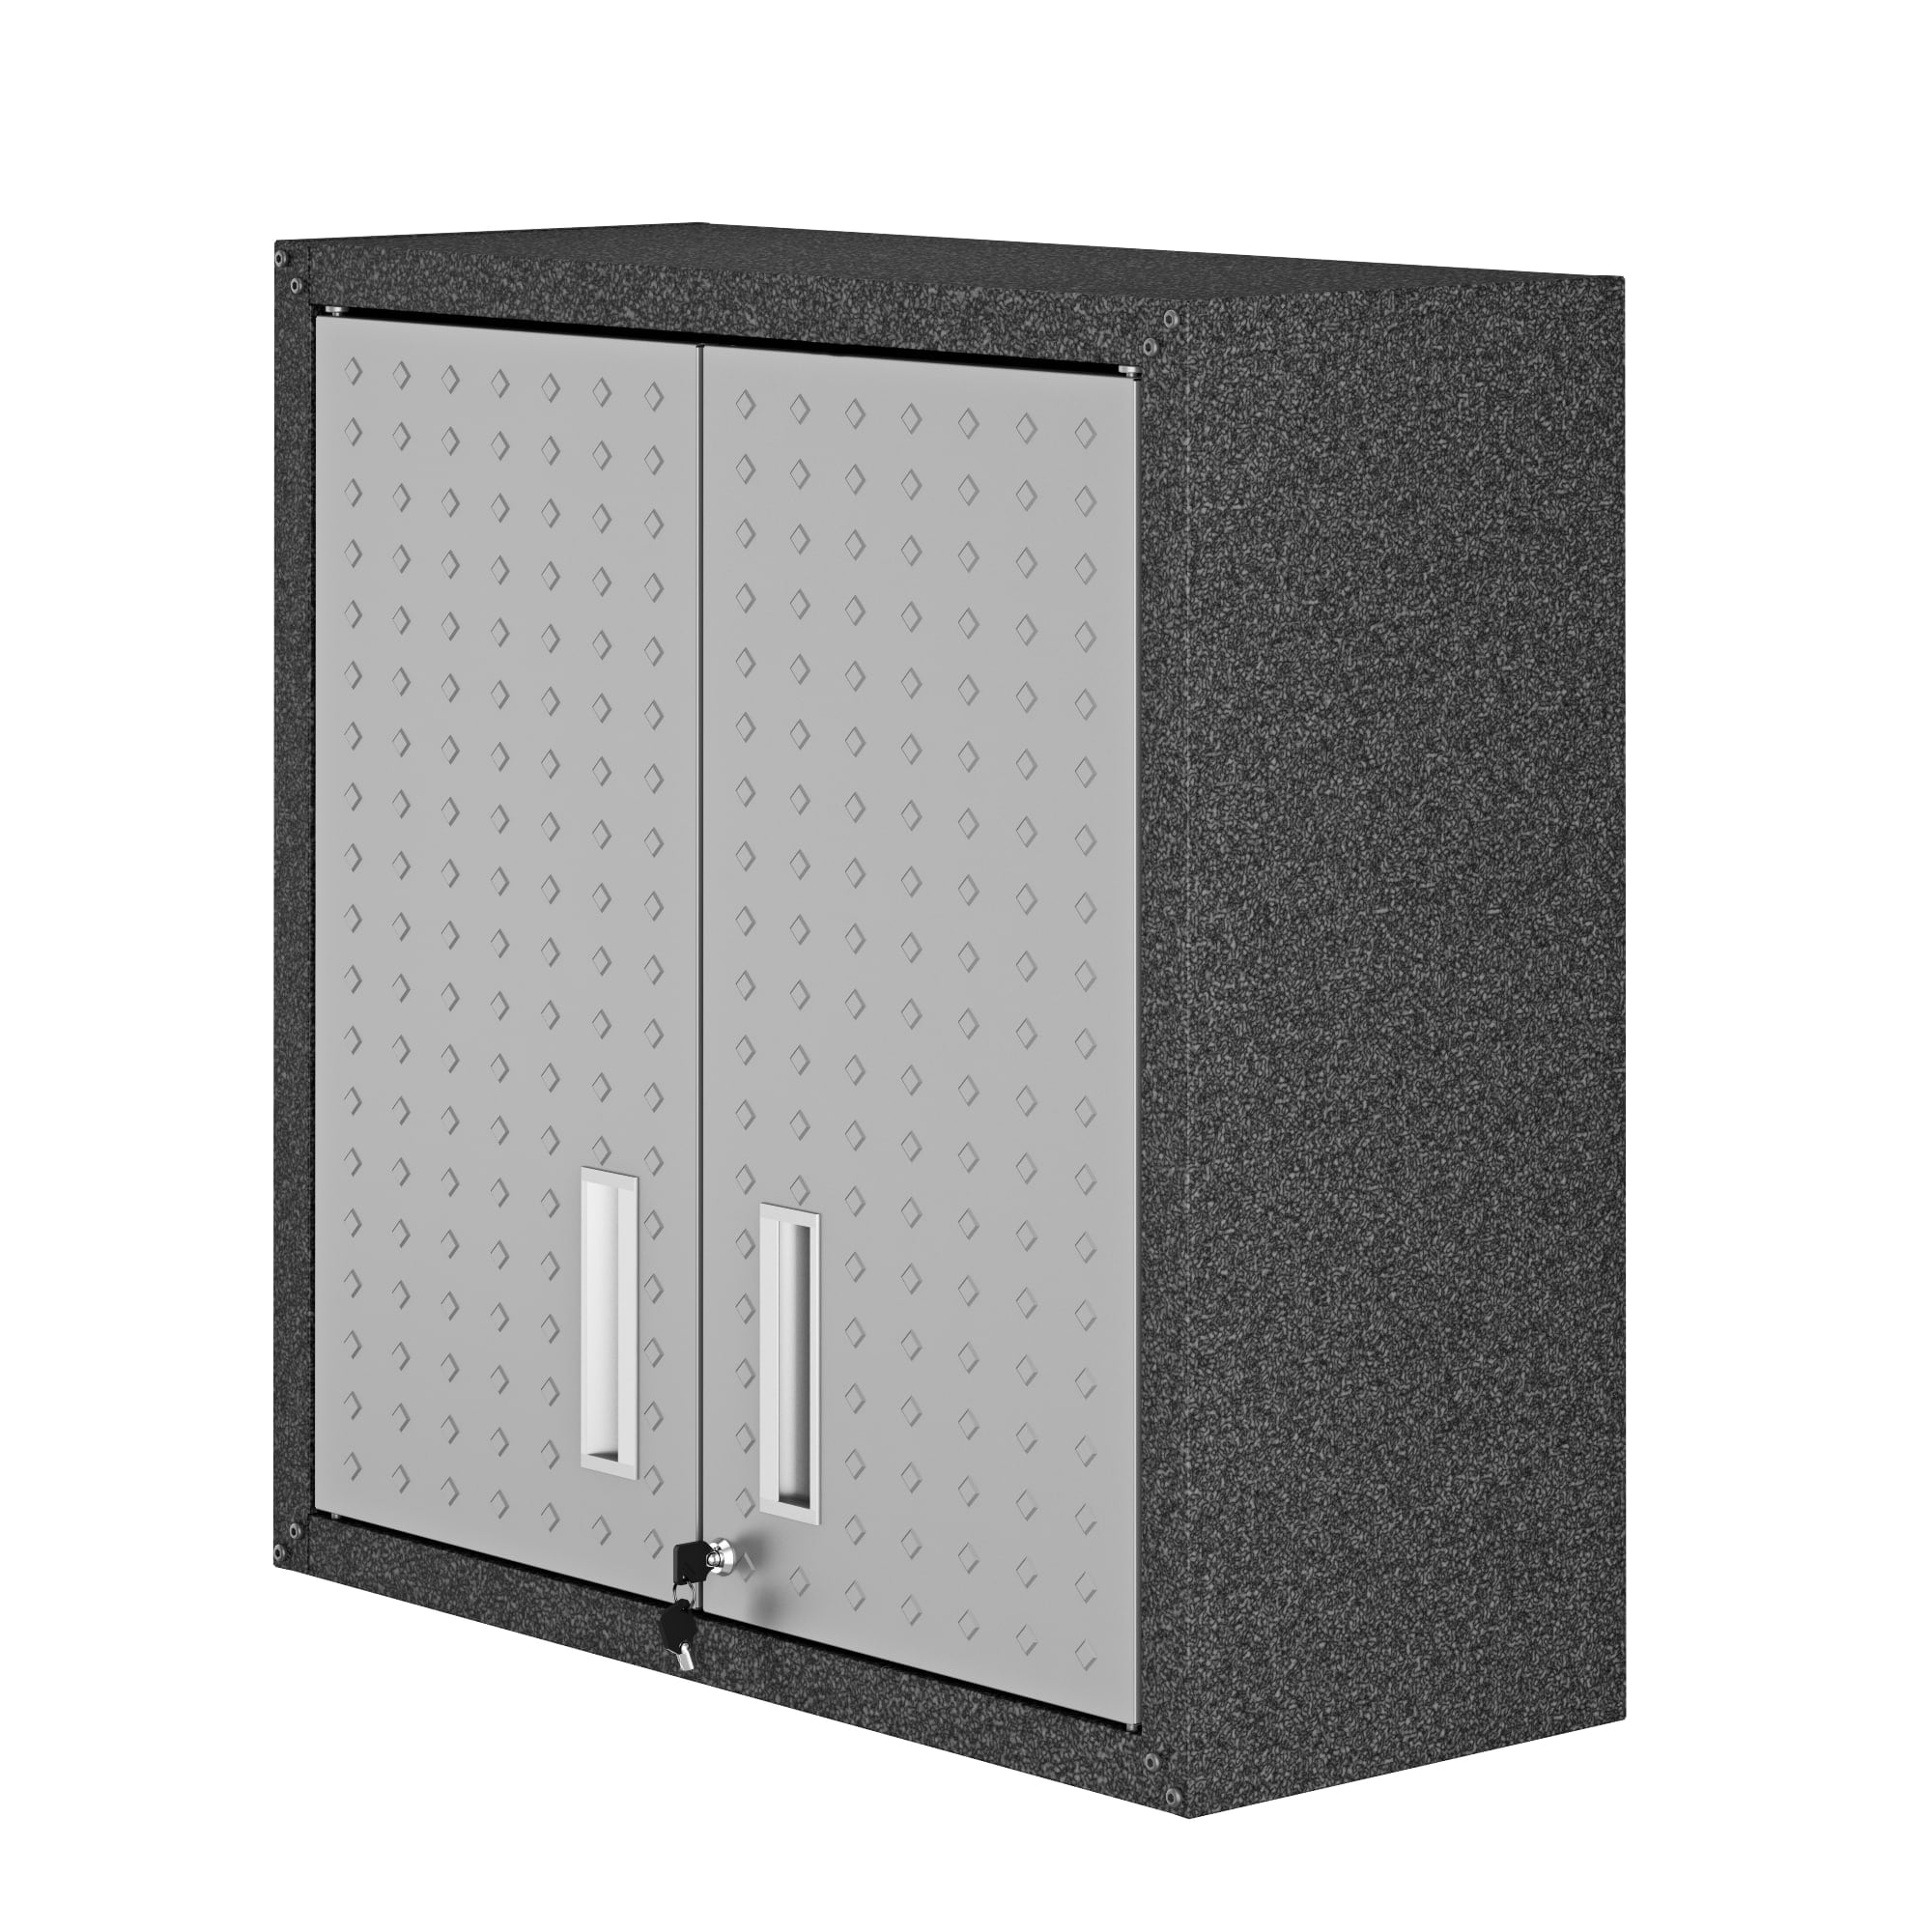 59.72 in. W Black 6-Tier Metal Pantry Organizer, Adjustable Metal Storage Shelves with Wheels